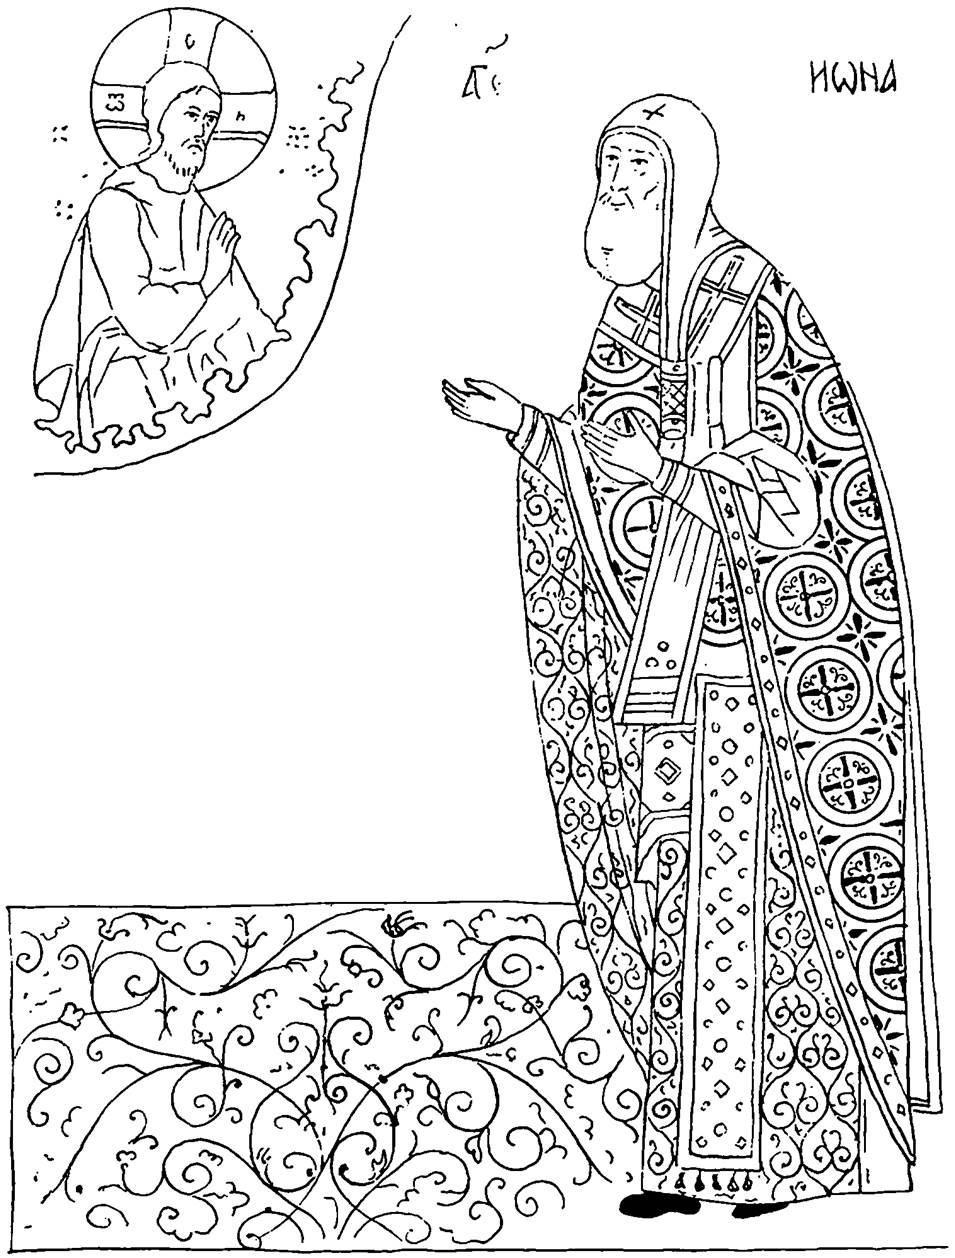 Преподобный Серафим прорись иконы